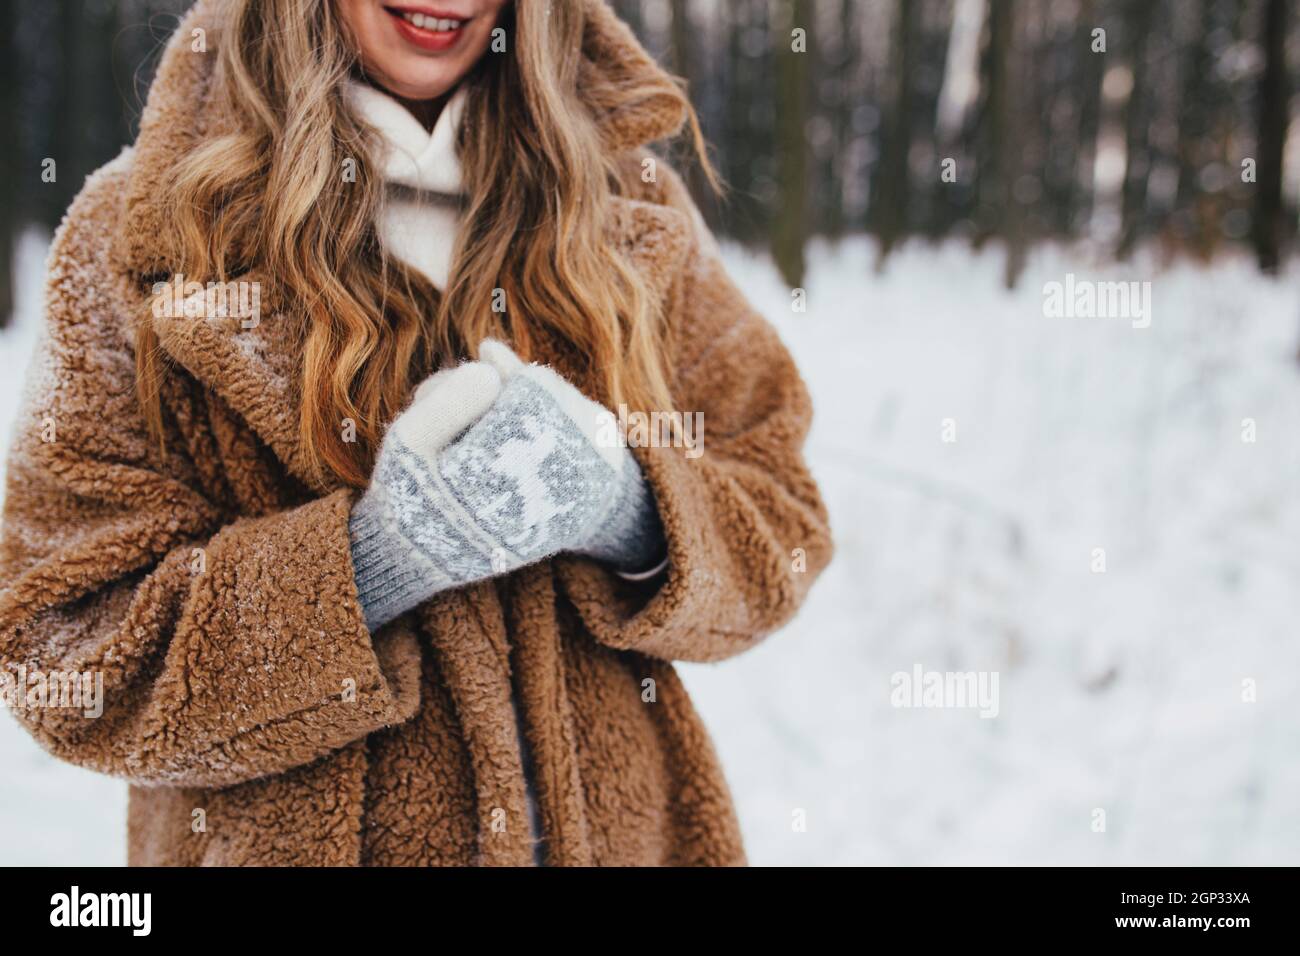 Jeune femme en fourrure, gants et foulard dans une forêt enneigée. Photo de haute qualité Banque D'Images